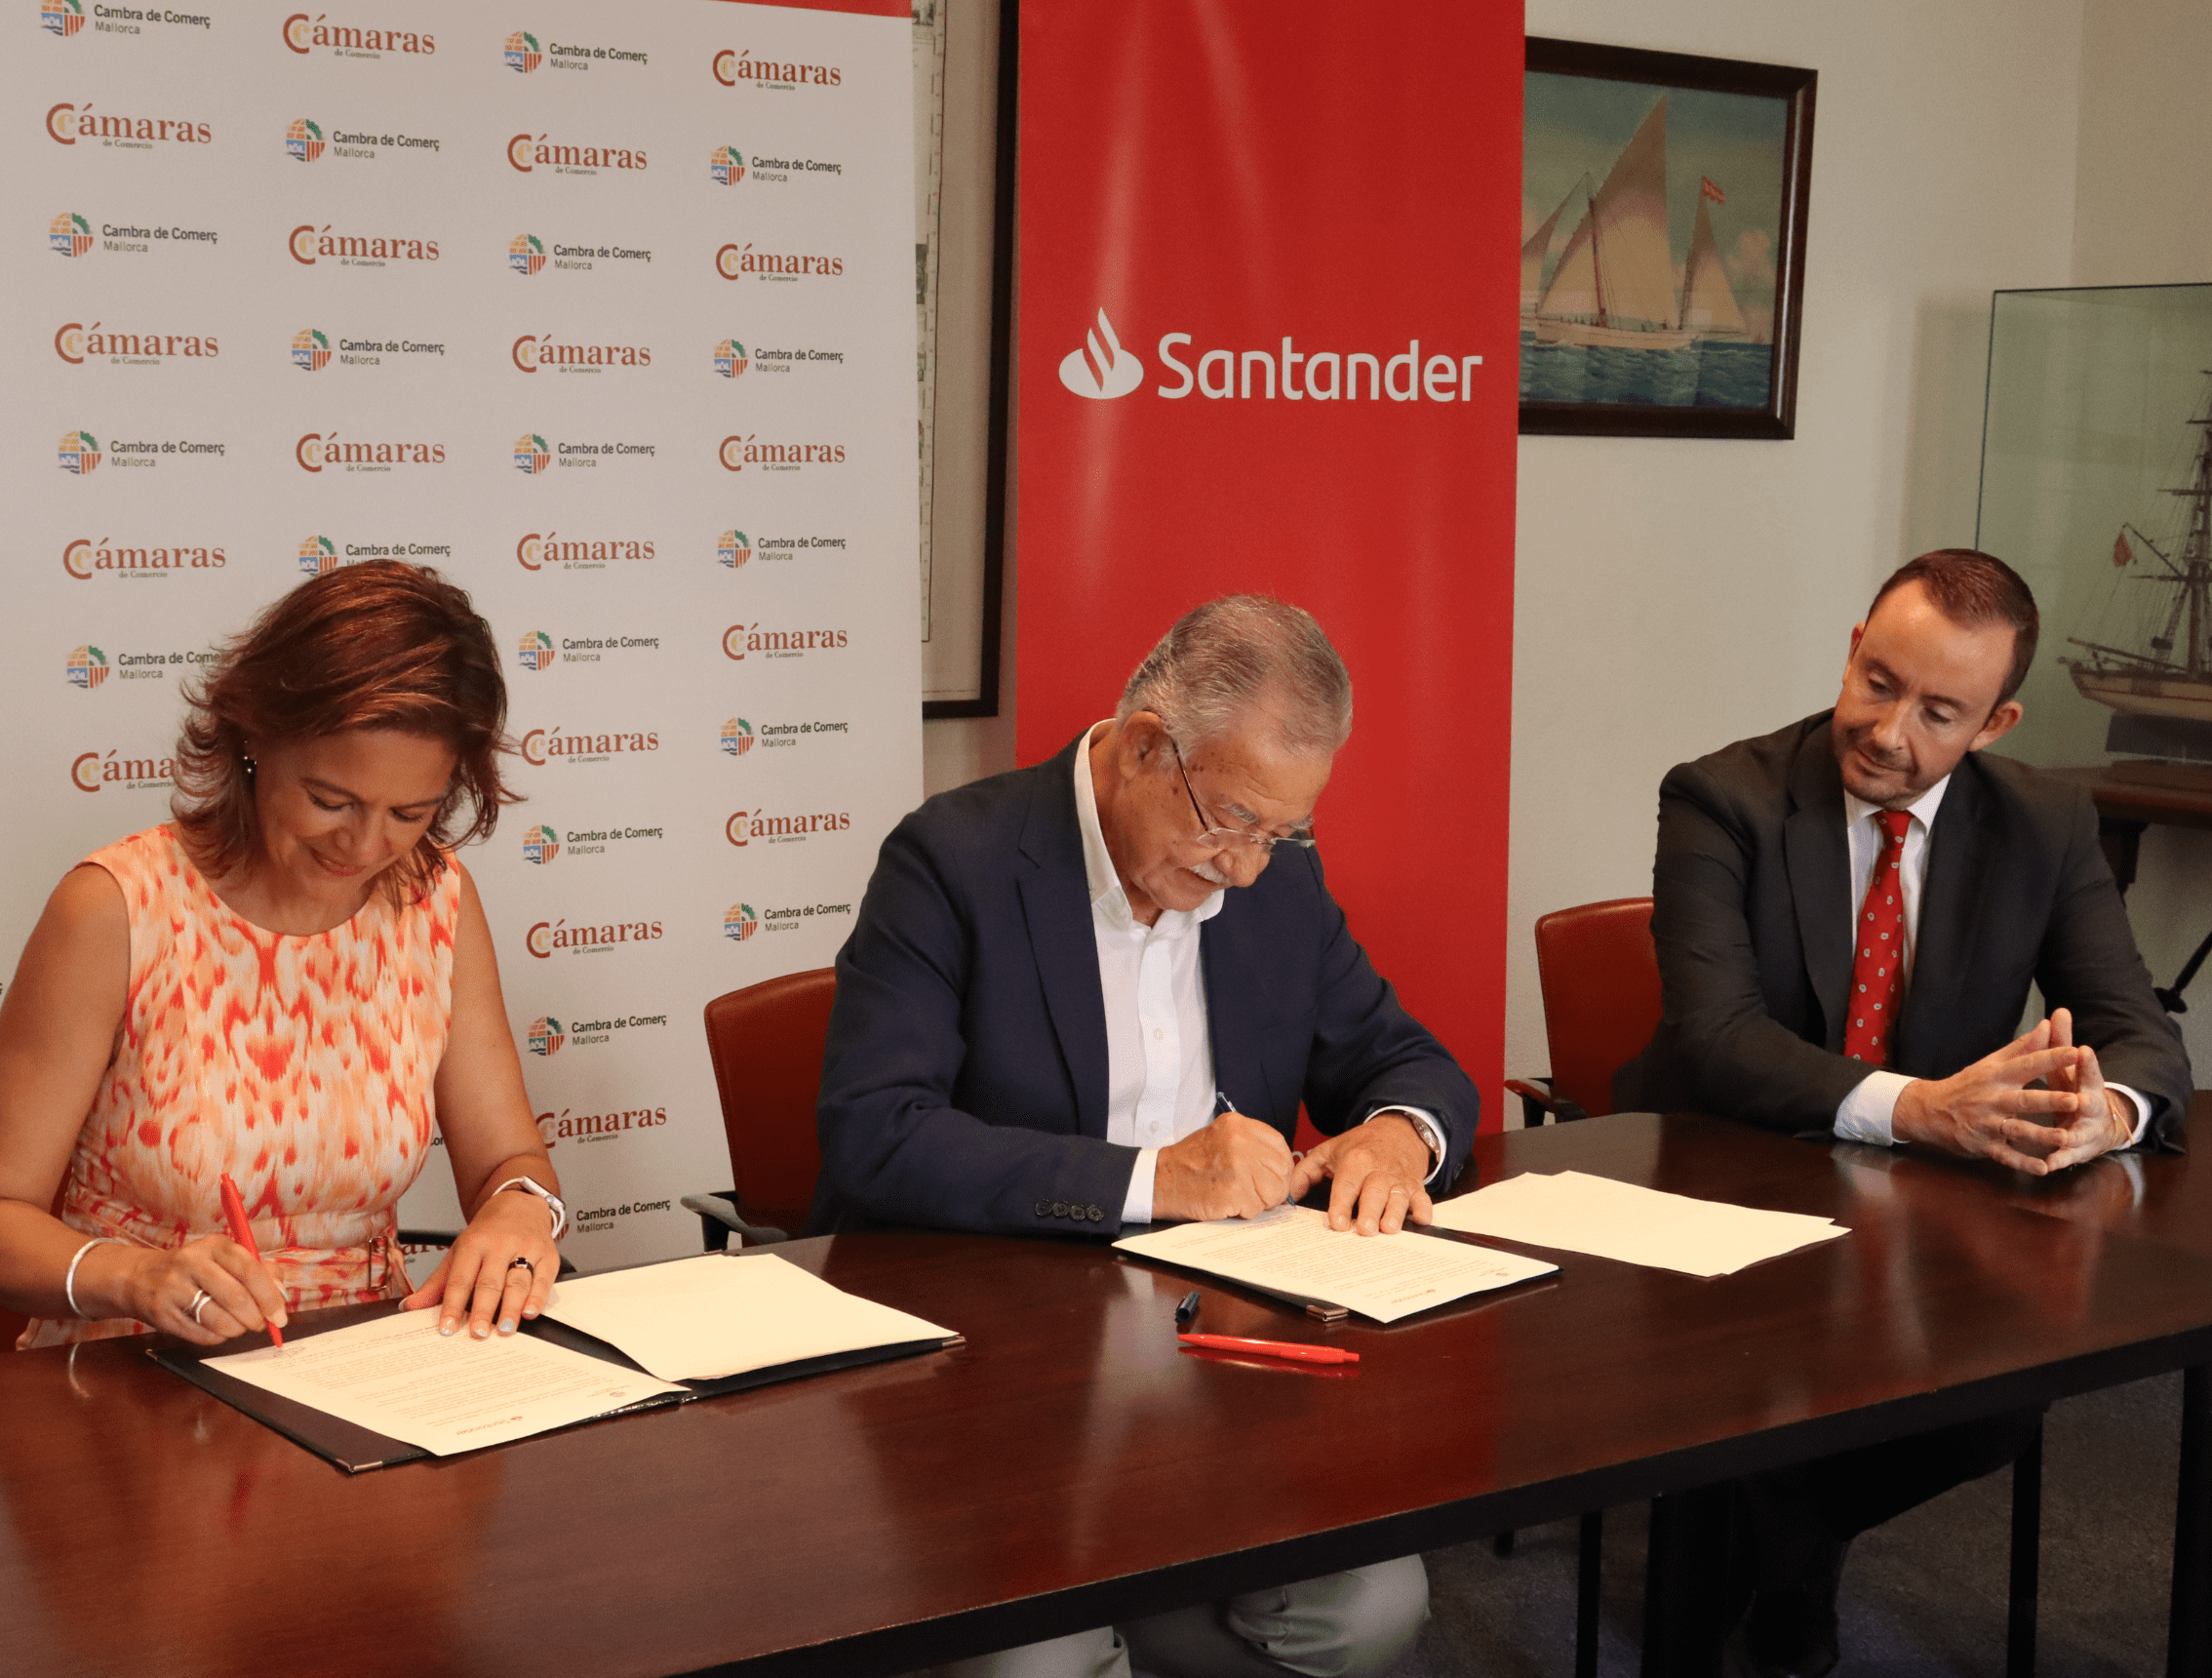 El Santander y Cambra Mallorca renuevan su colaboración